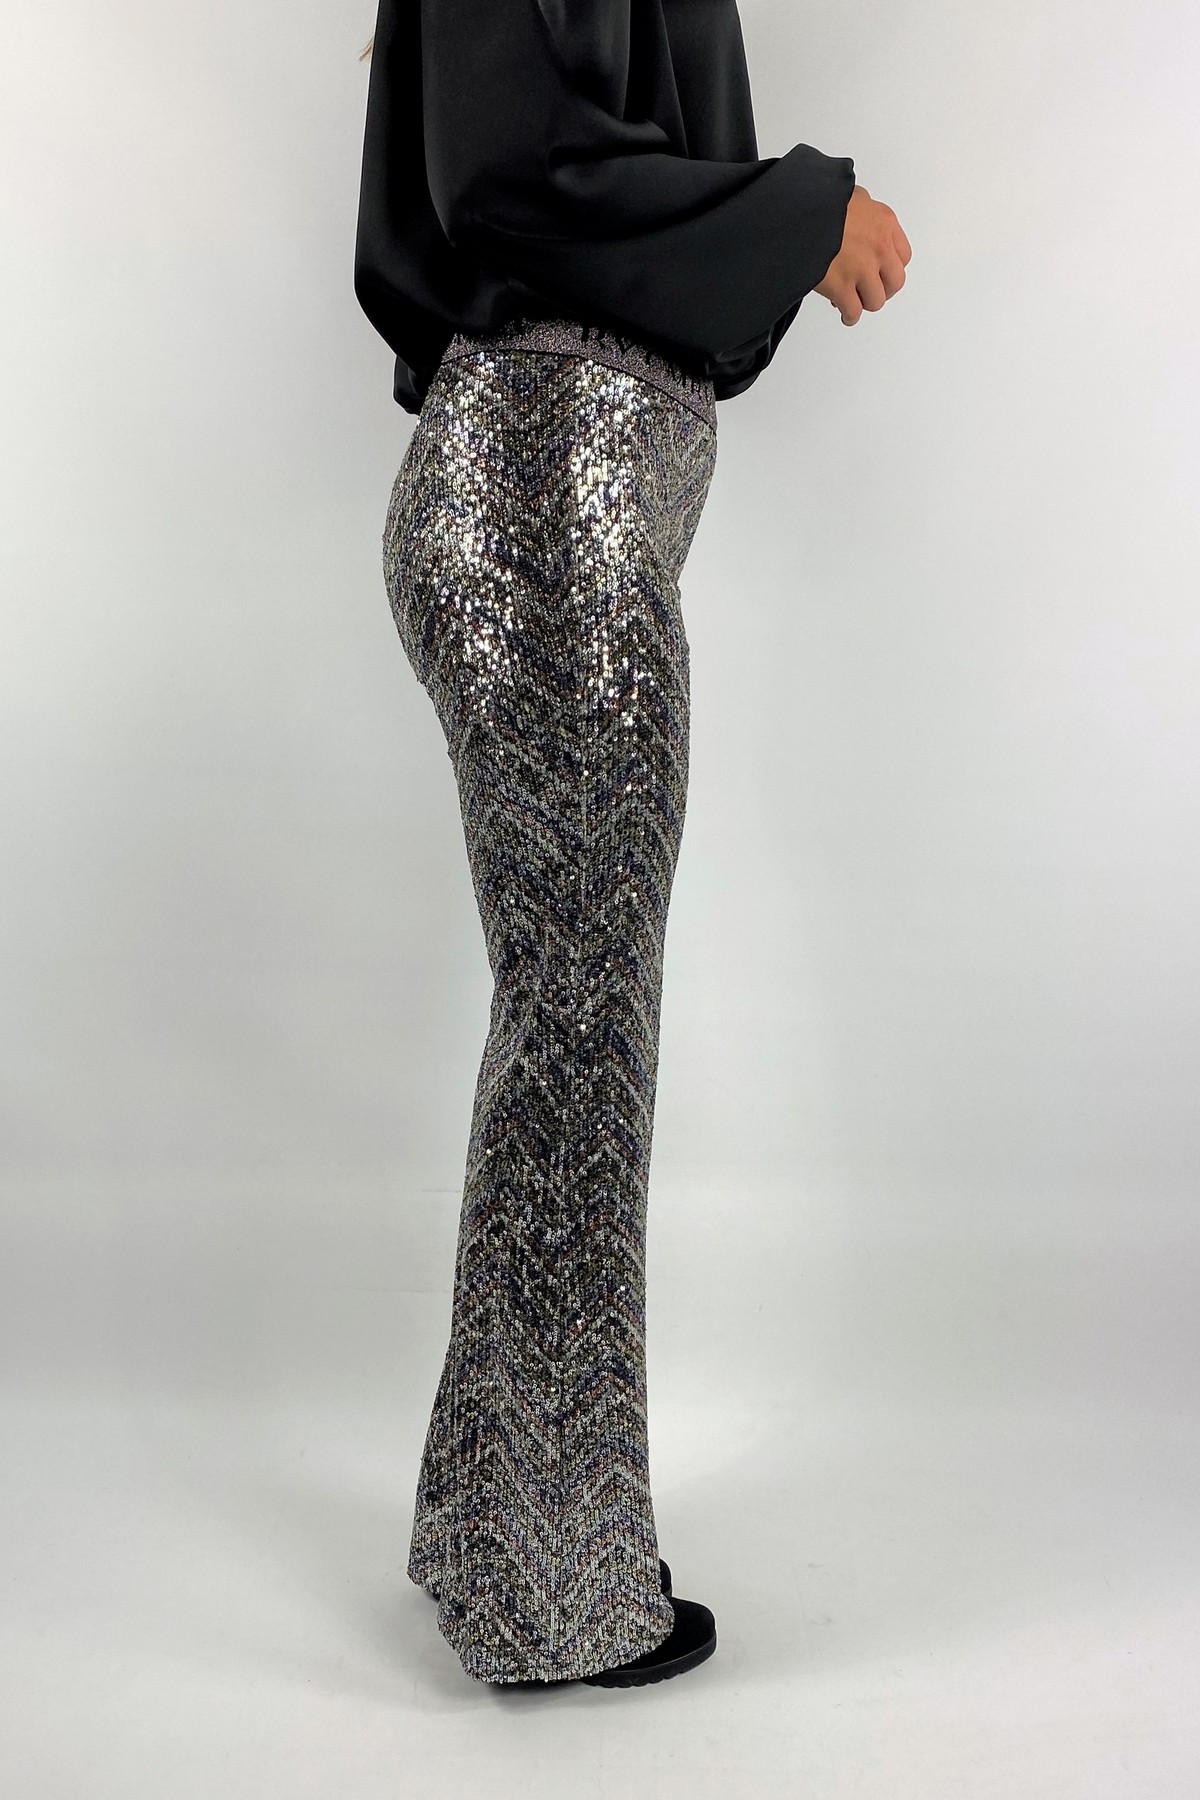 Cambio - Francis 6542 972 - Broek fashion zigzag zilver - uitverkocht